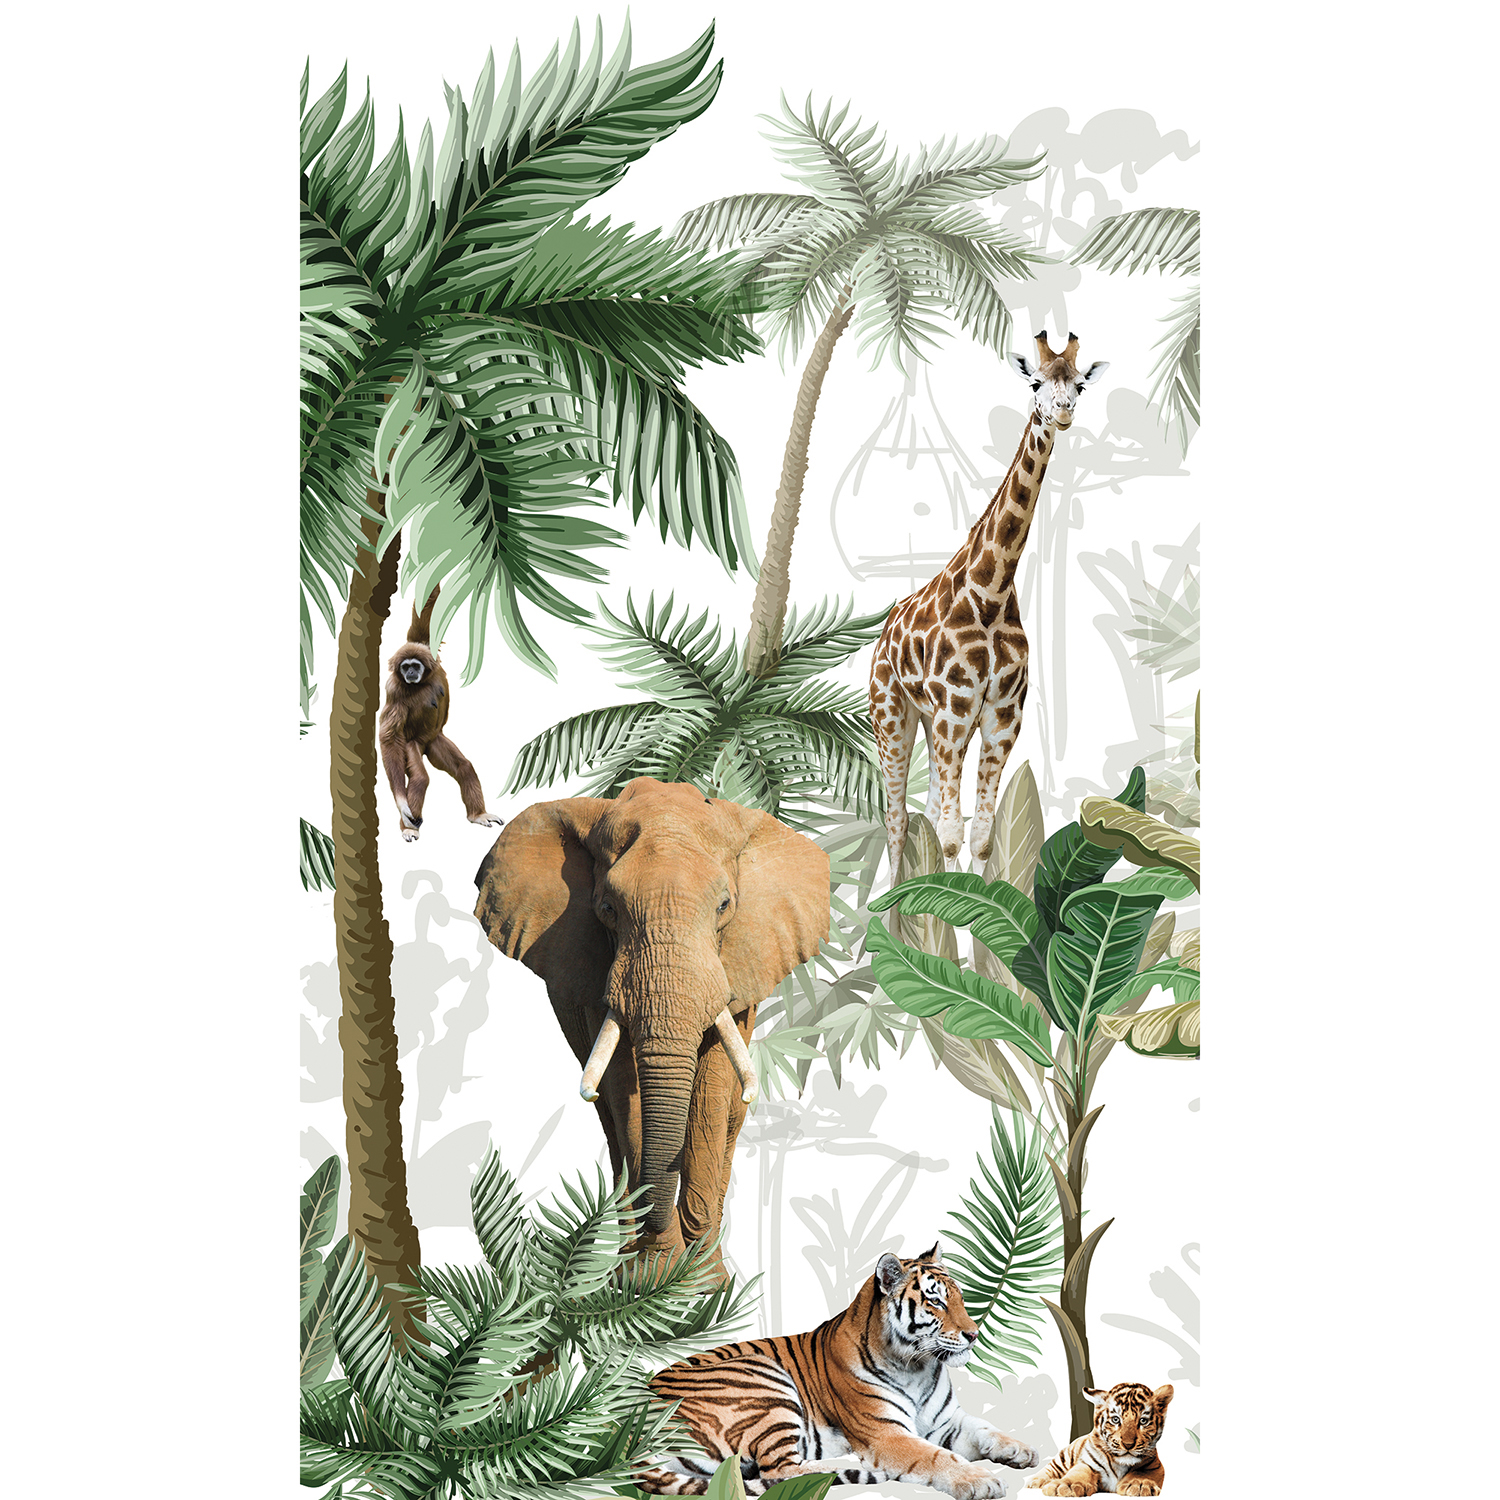 Visuel panoramique, 2.50 m x 1.50 m, papier intissé, qualité, illustration détaillée des animaux de la savane africaine sur fond de végétation exotique, éléphant, tigre, tigreau, girafe et singe, lavable facilement, idéal chambre bébé.